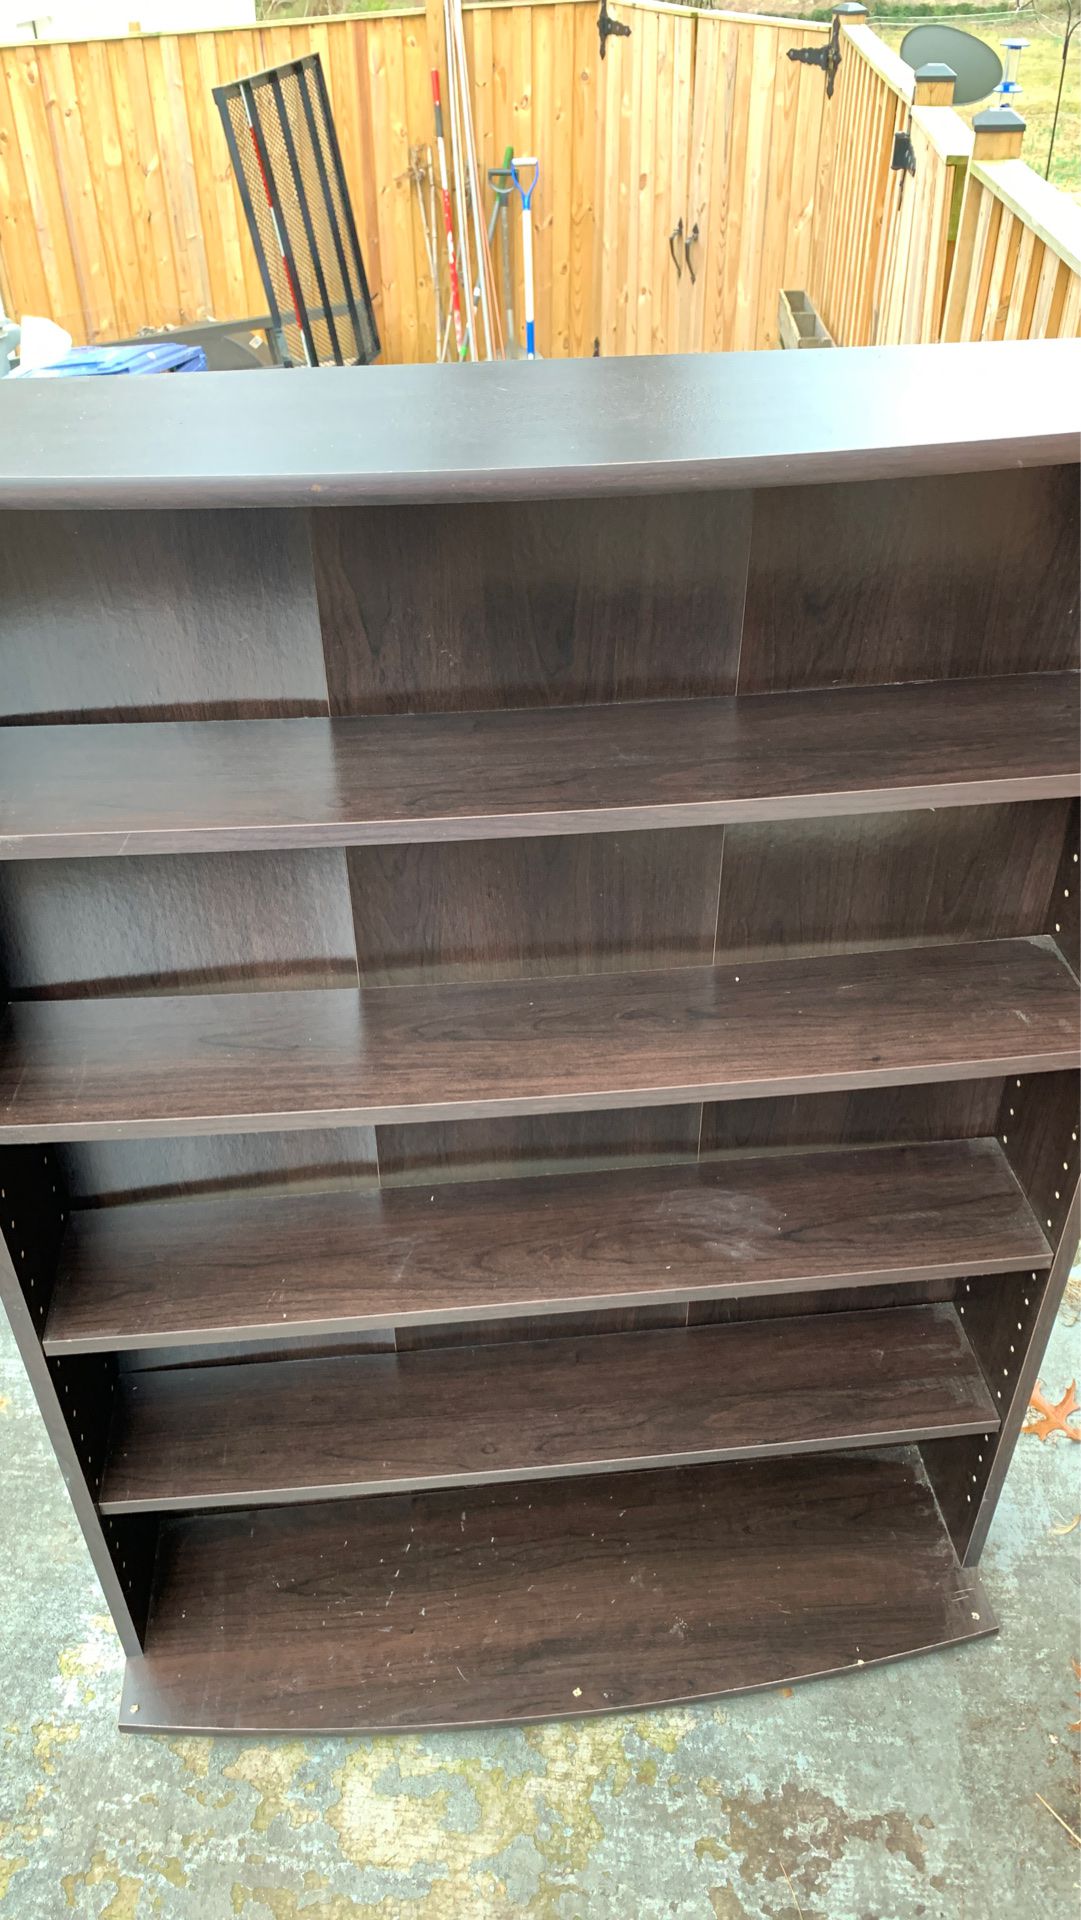 Cherry wood color 5 shelf book shelf